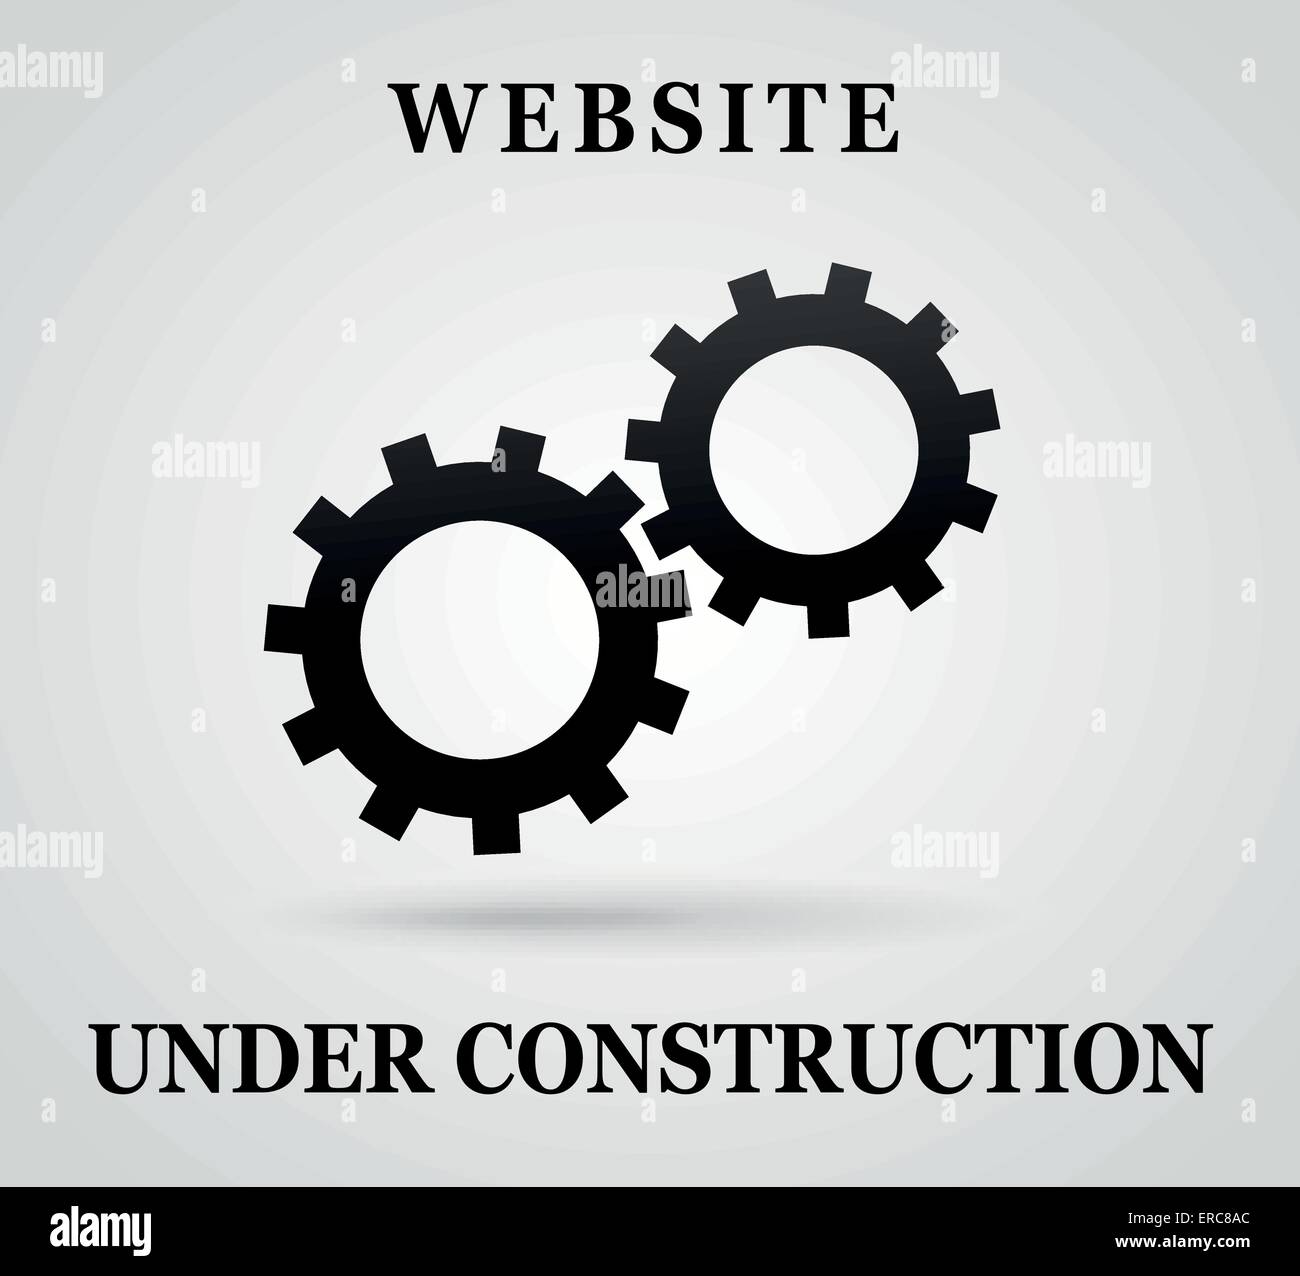 Vektor-Illustration der Website unter Hintergrund Baukonzept Stock Vektor